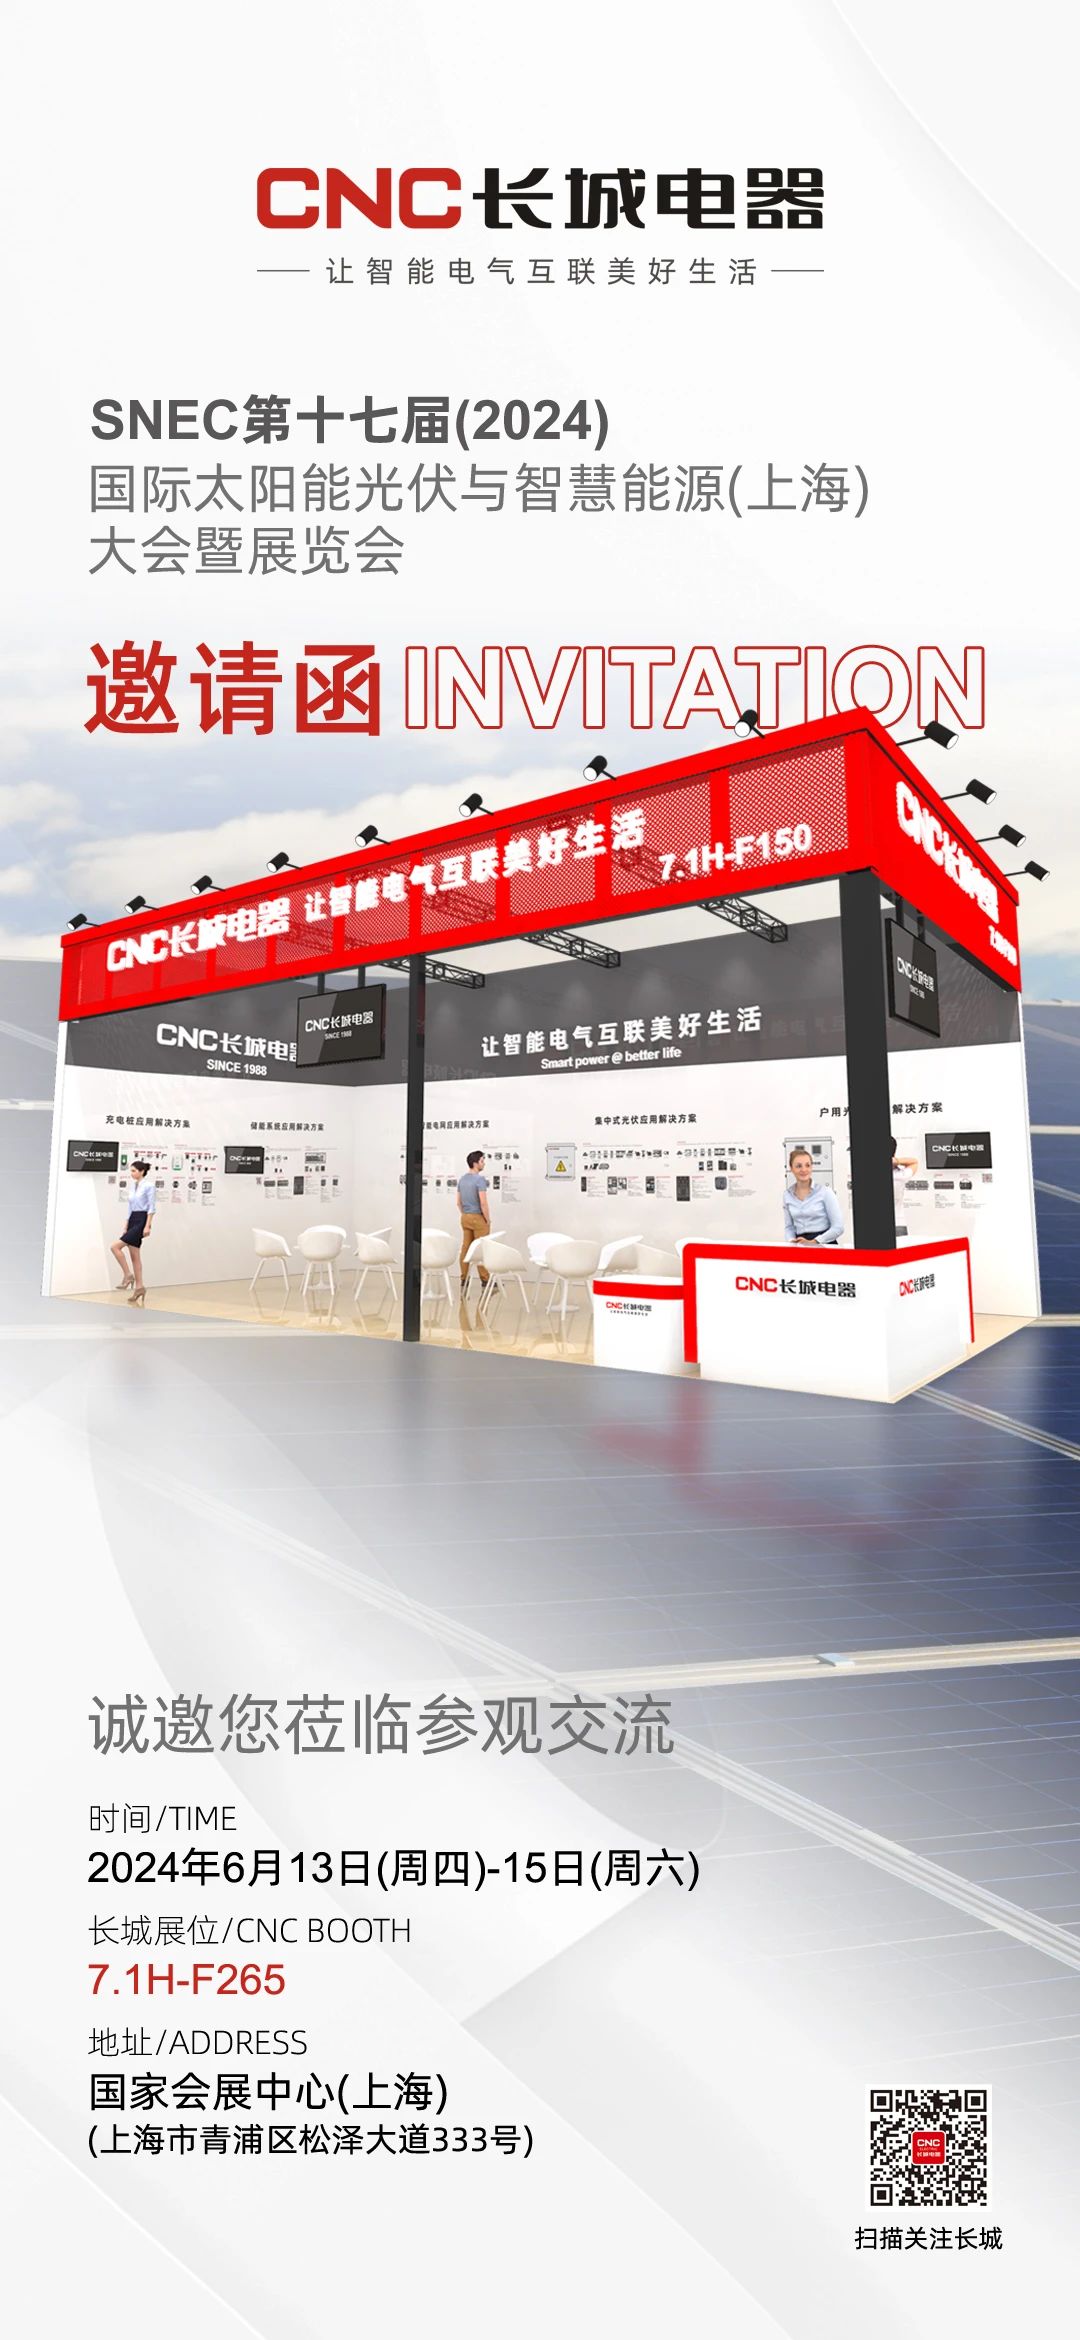 展会邀请 | 长城电器诚邀您参加SNEC2024上海国际光伏展